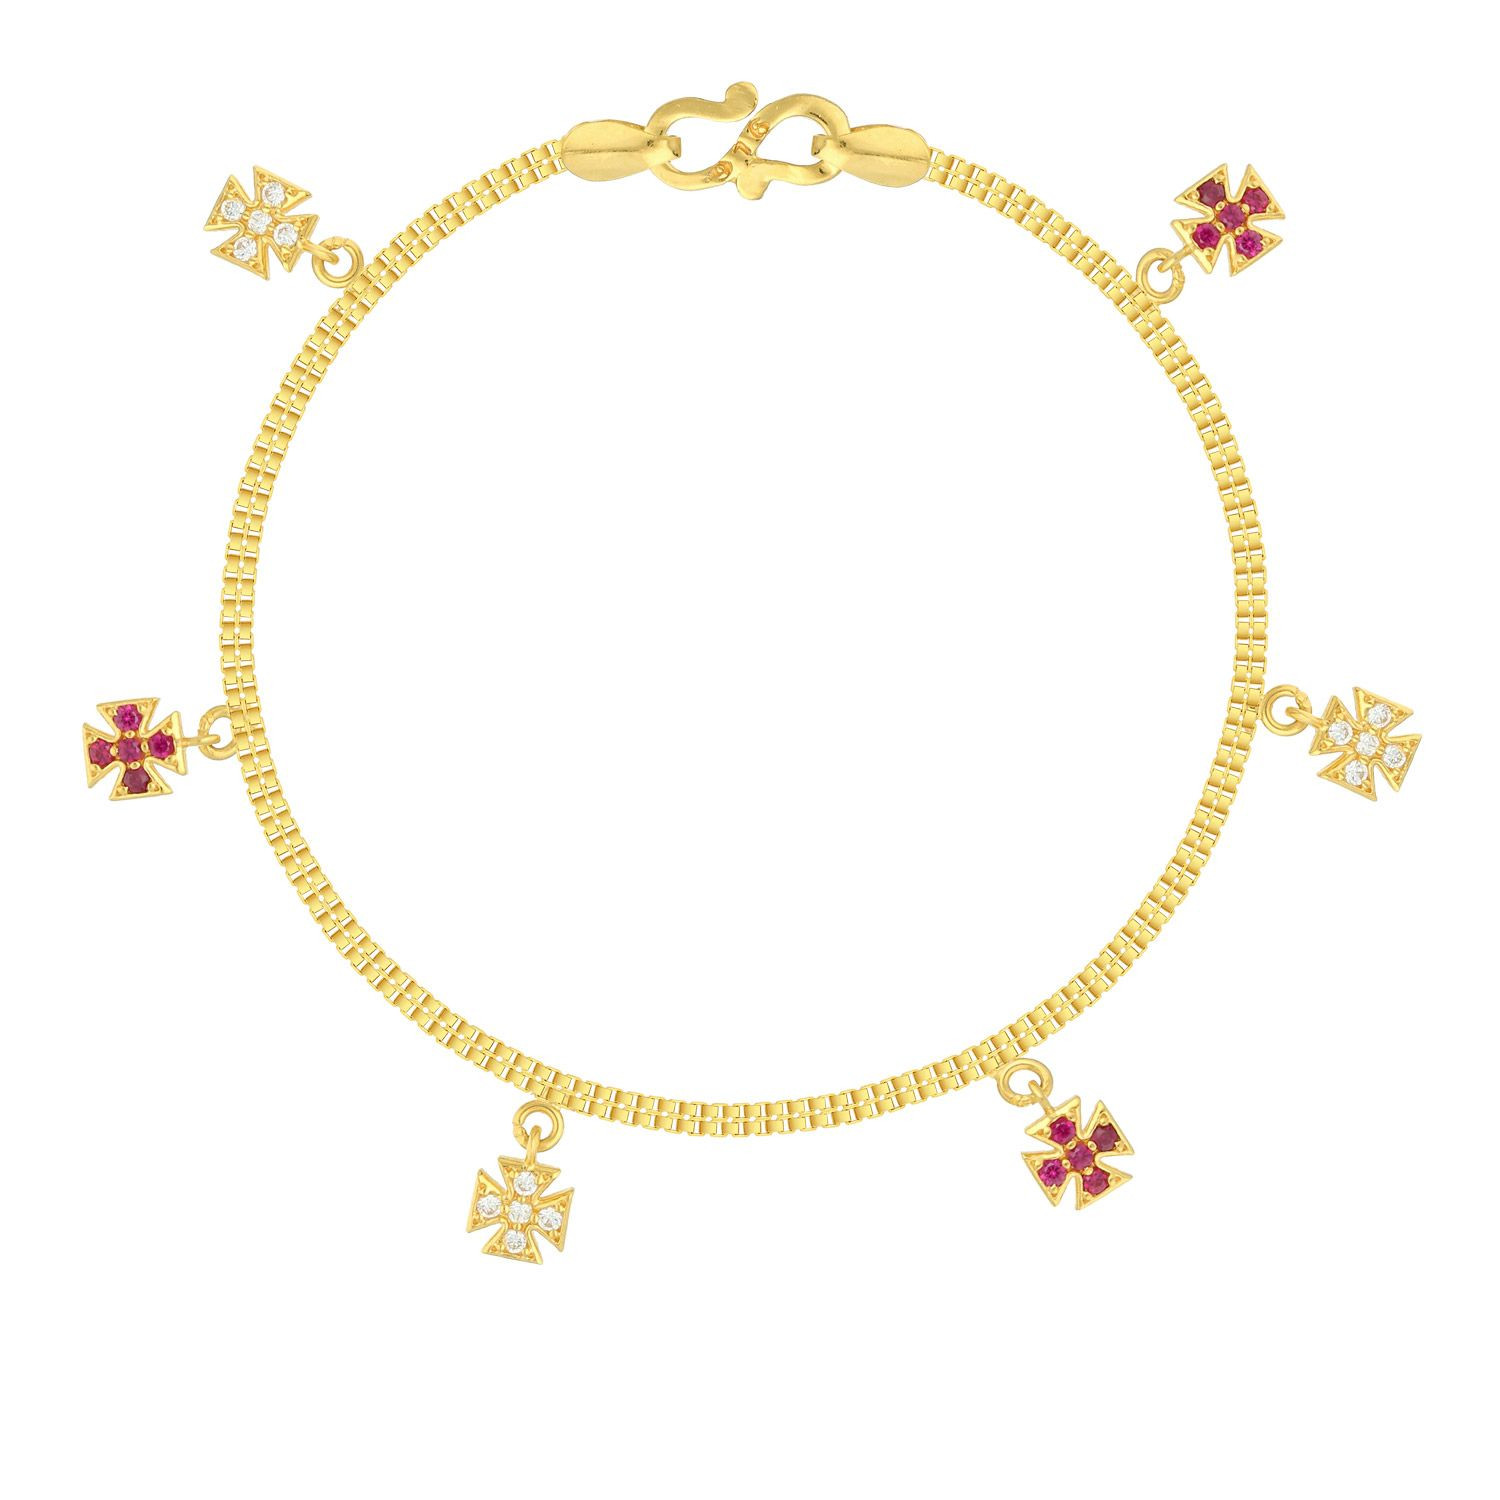 Malabar 22 KT Gold Studded Charms Bracelet BRDZSKY106